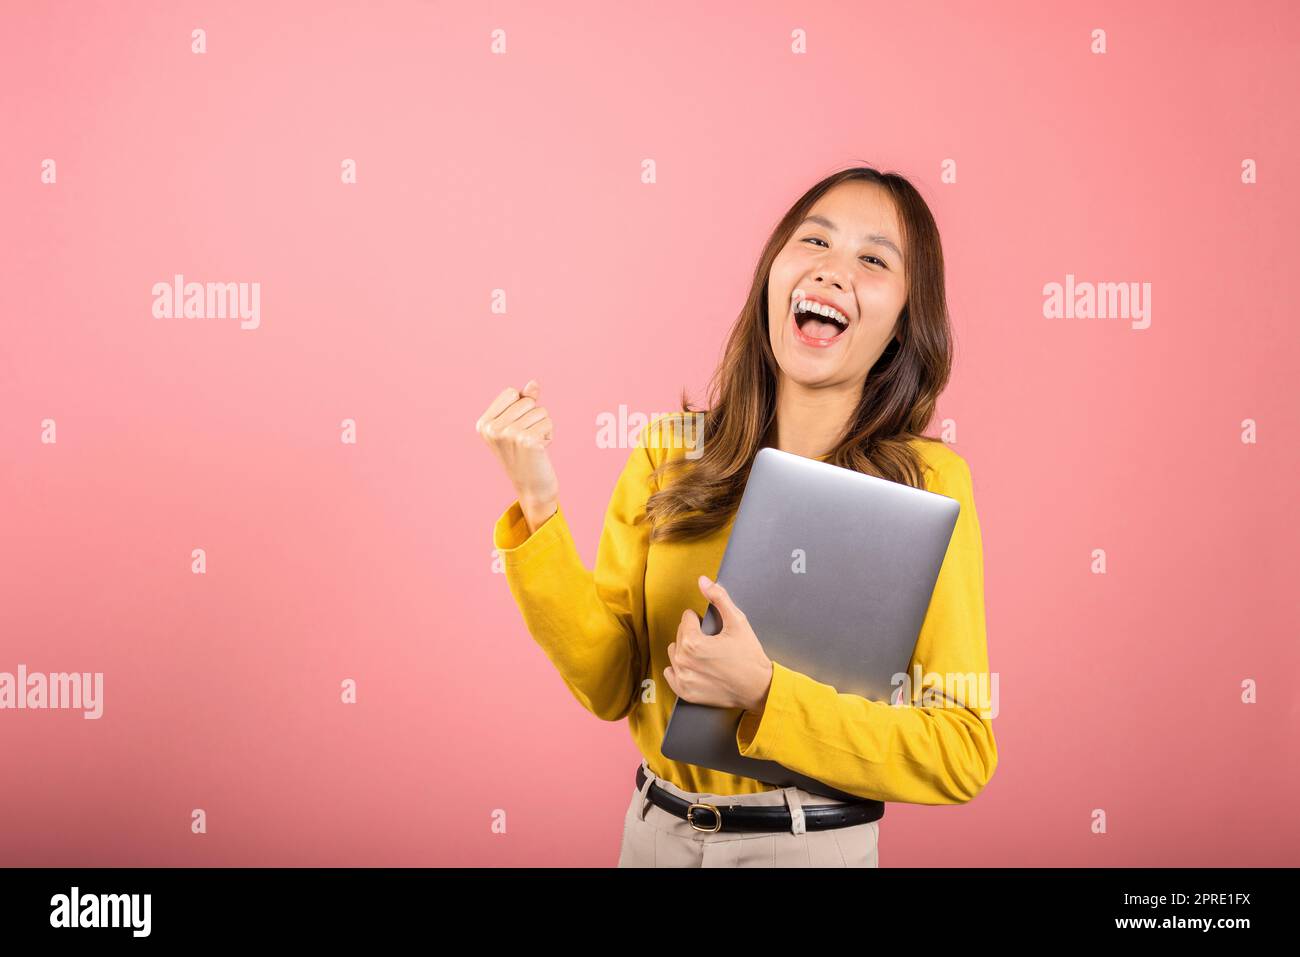 cara sonriente confiada de la mujer que sostiene el ordenador portátil levante la mano y diga sí Foto de stock